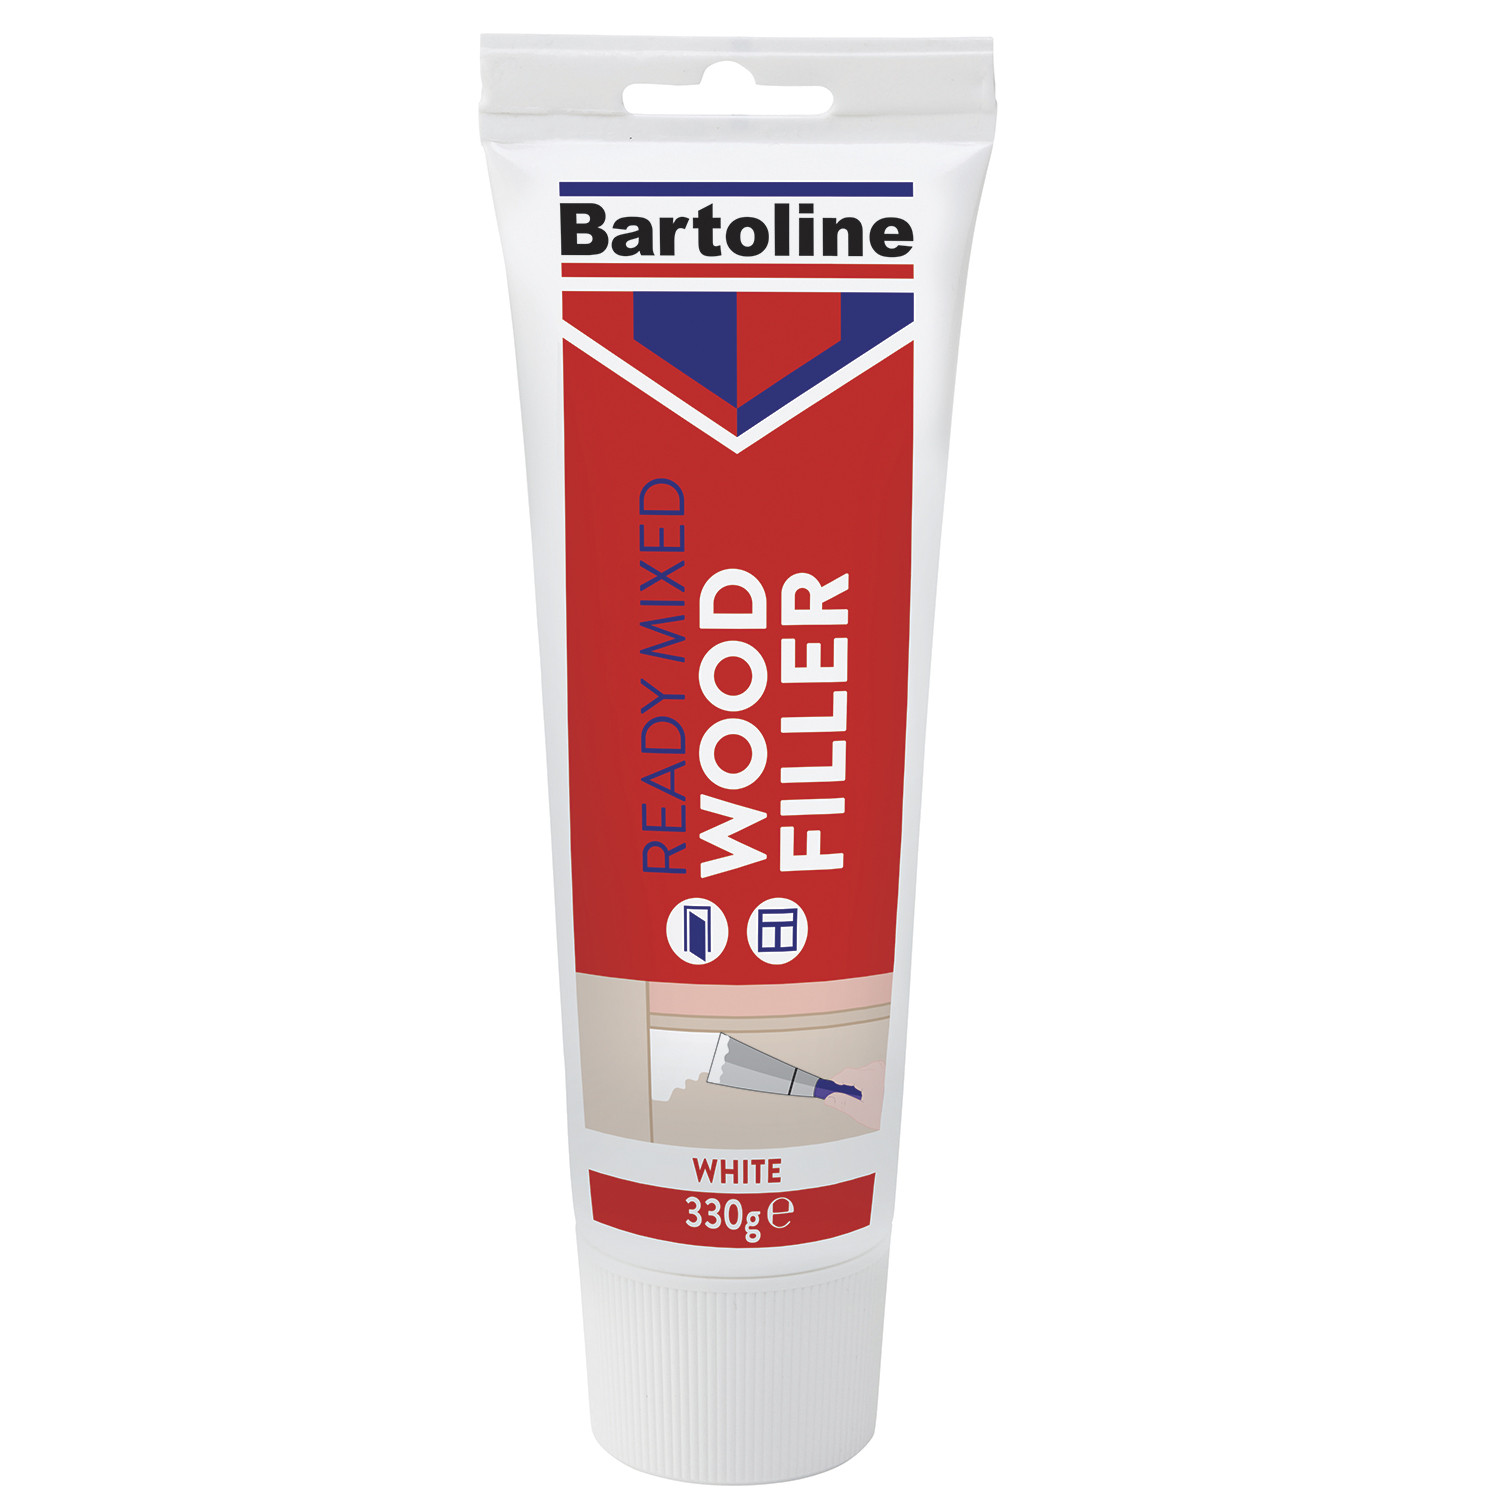 Bartoline Ready Mixed White Wood Filler Image